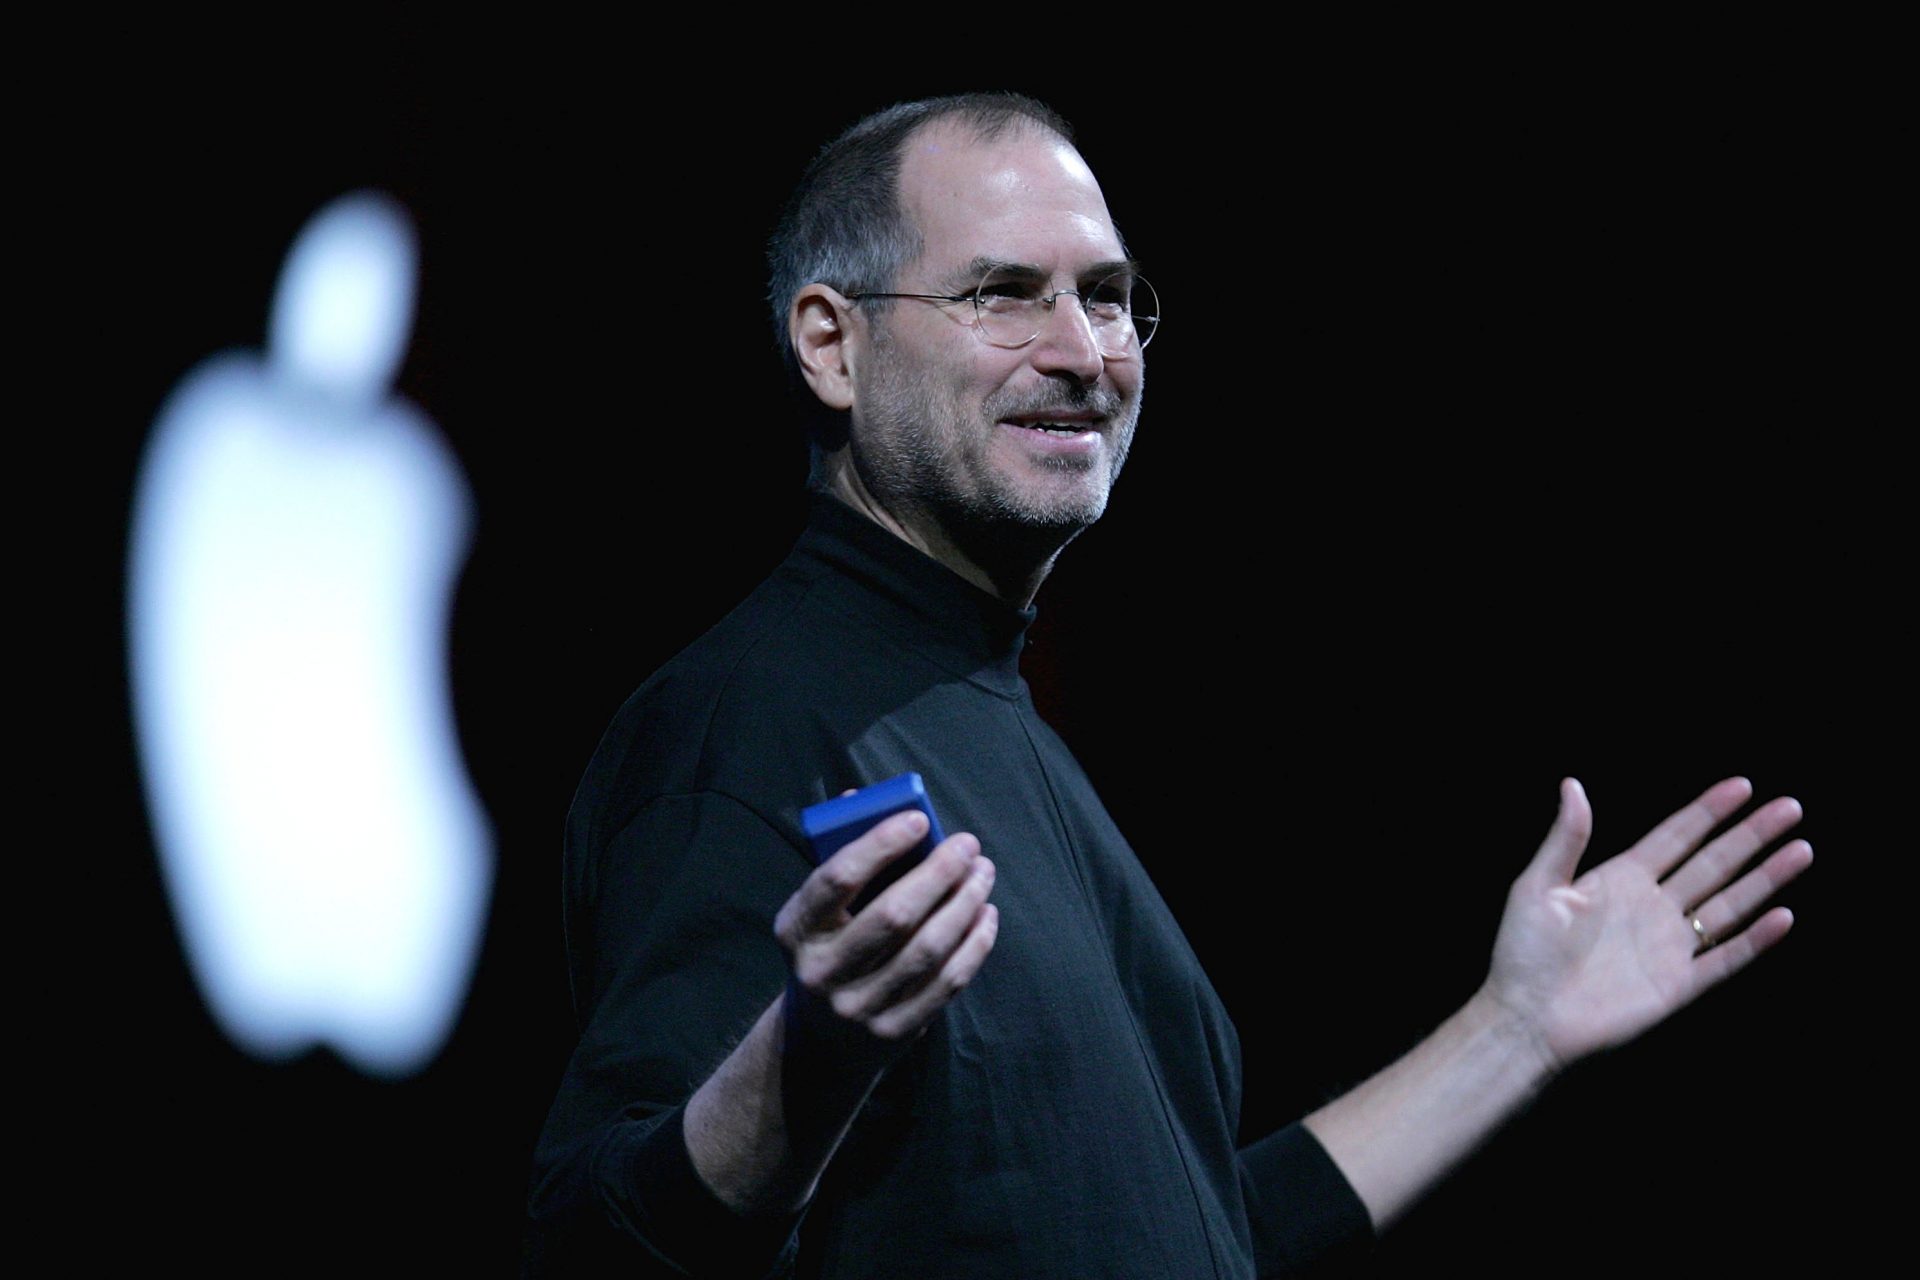 Why didn't Steve Jobs' children receive their millionaire inheritance?